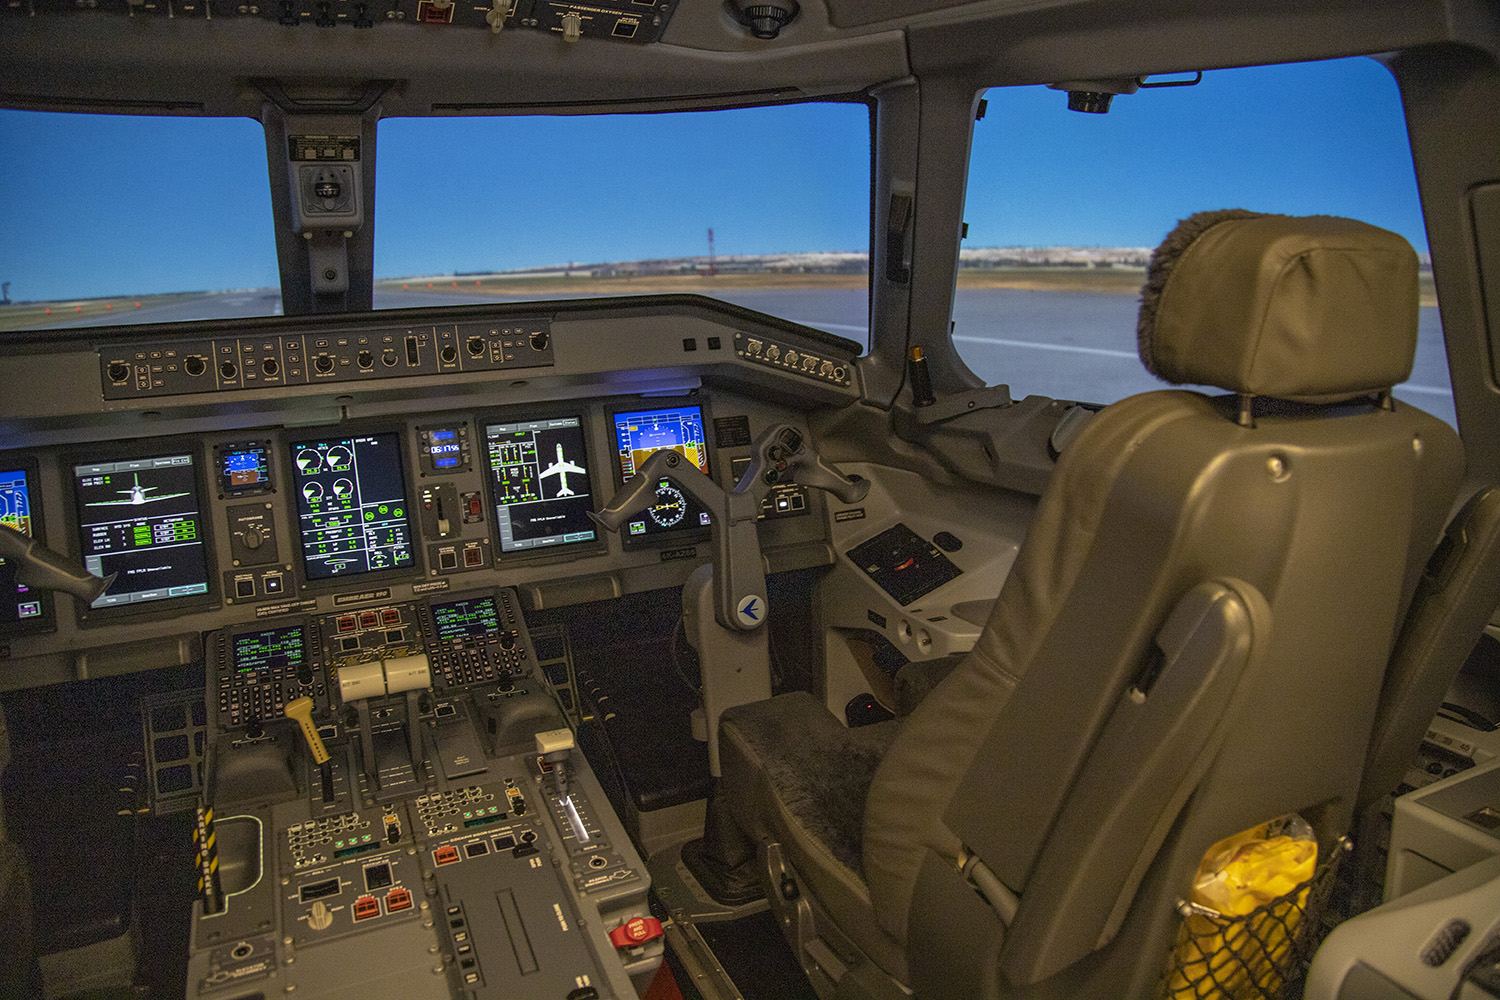 AZAL-ın Pilotların Hazırlığı Mərkəzində yeni müasir uçuş trenajoru quraşdırılıb (FOTO/VİDEO)